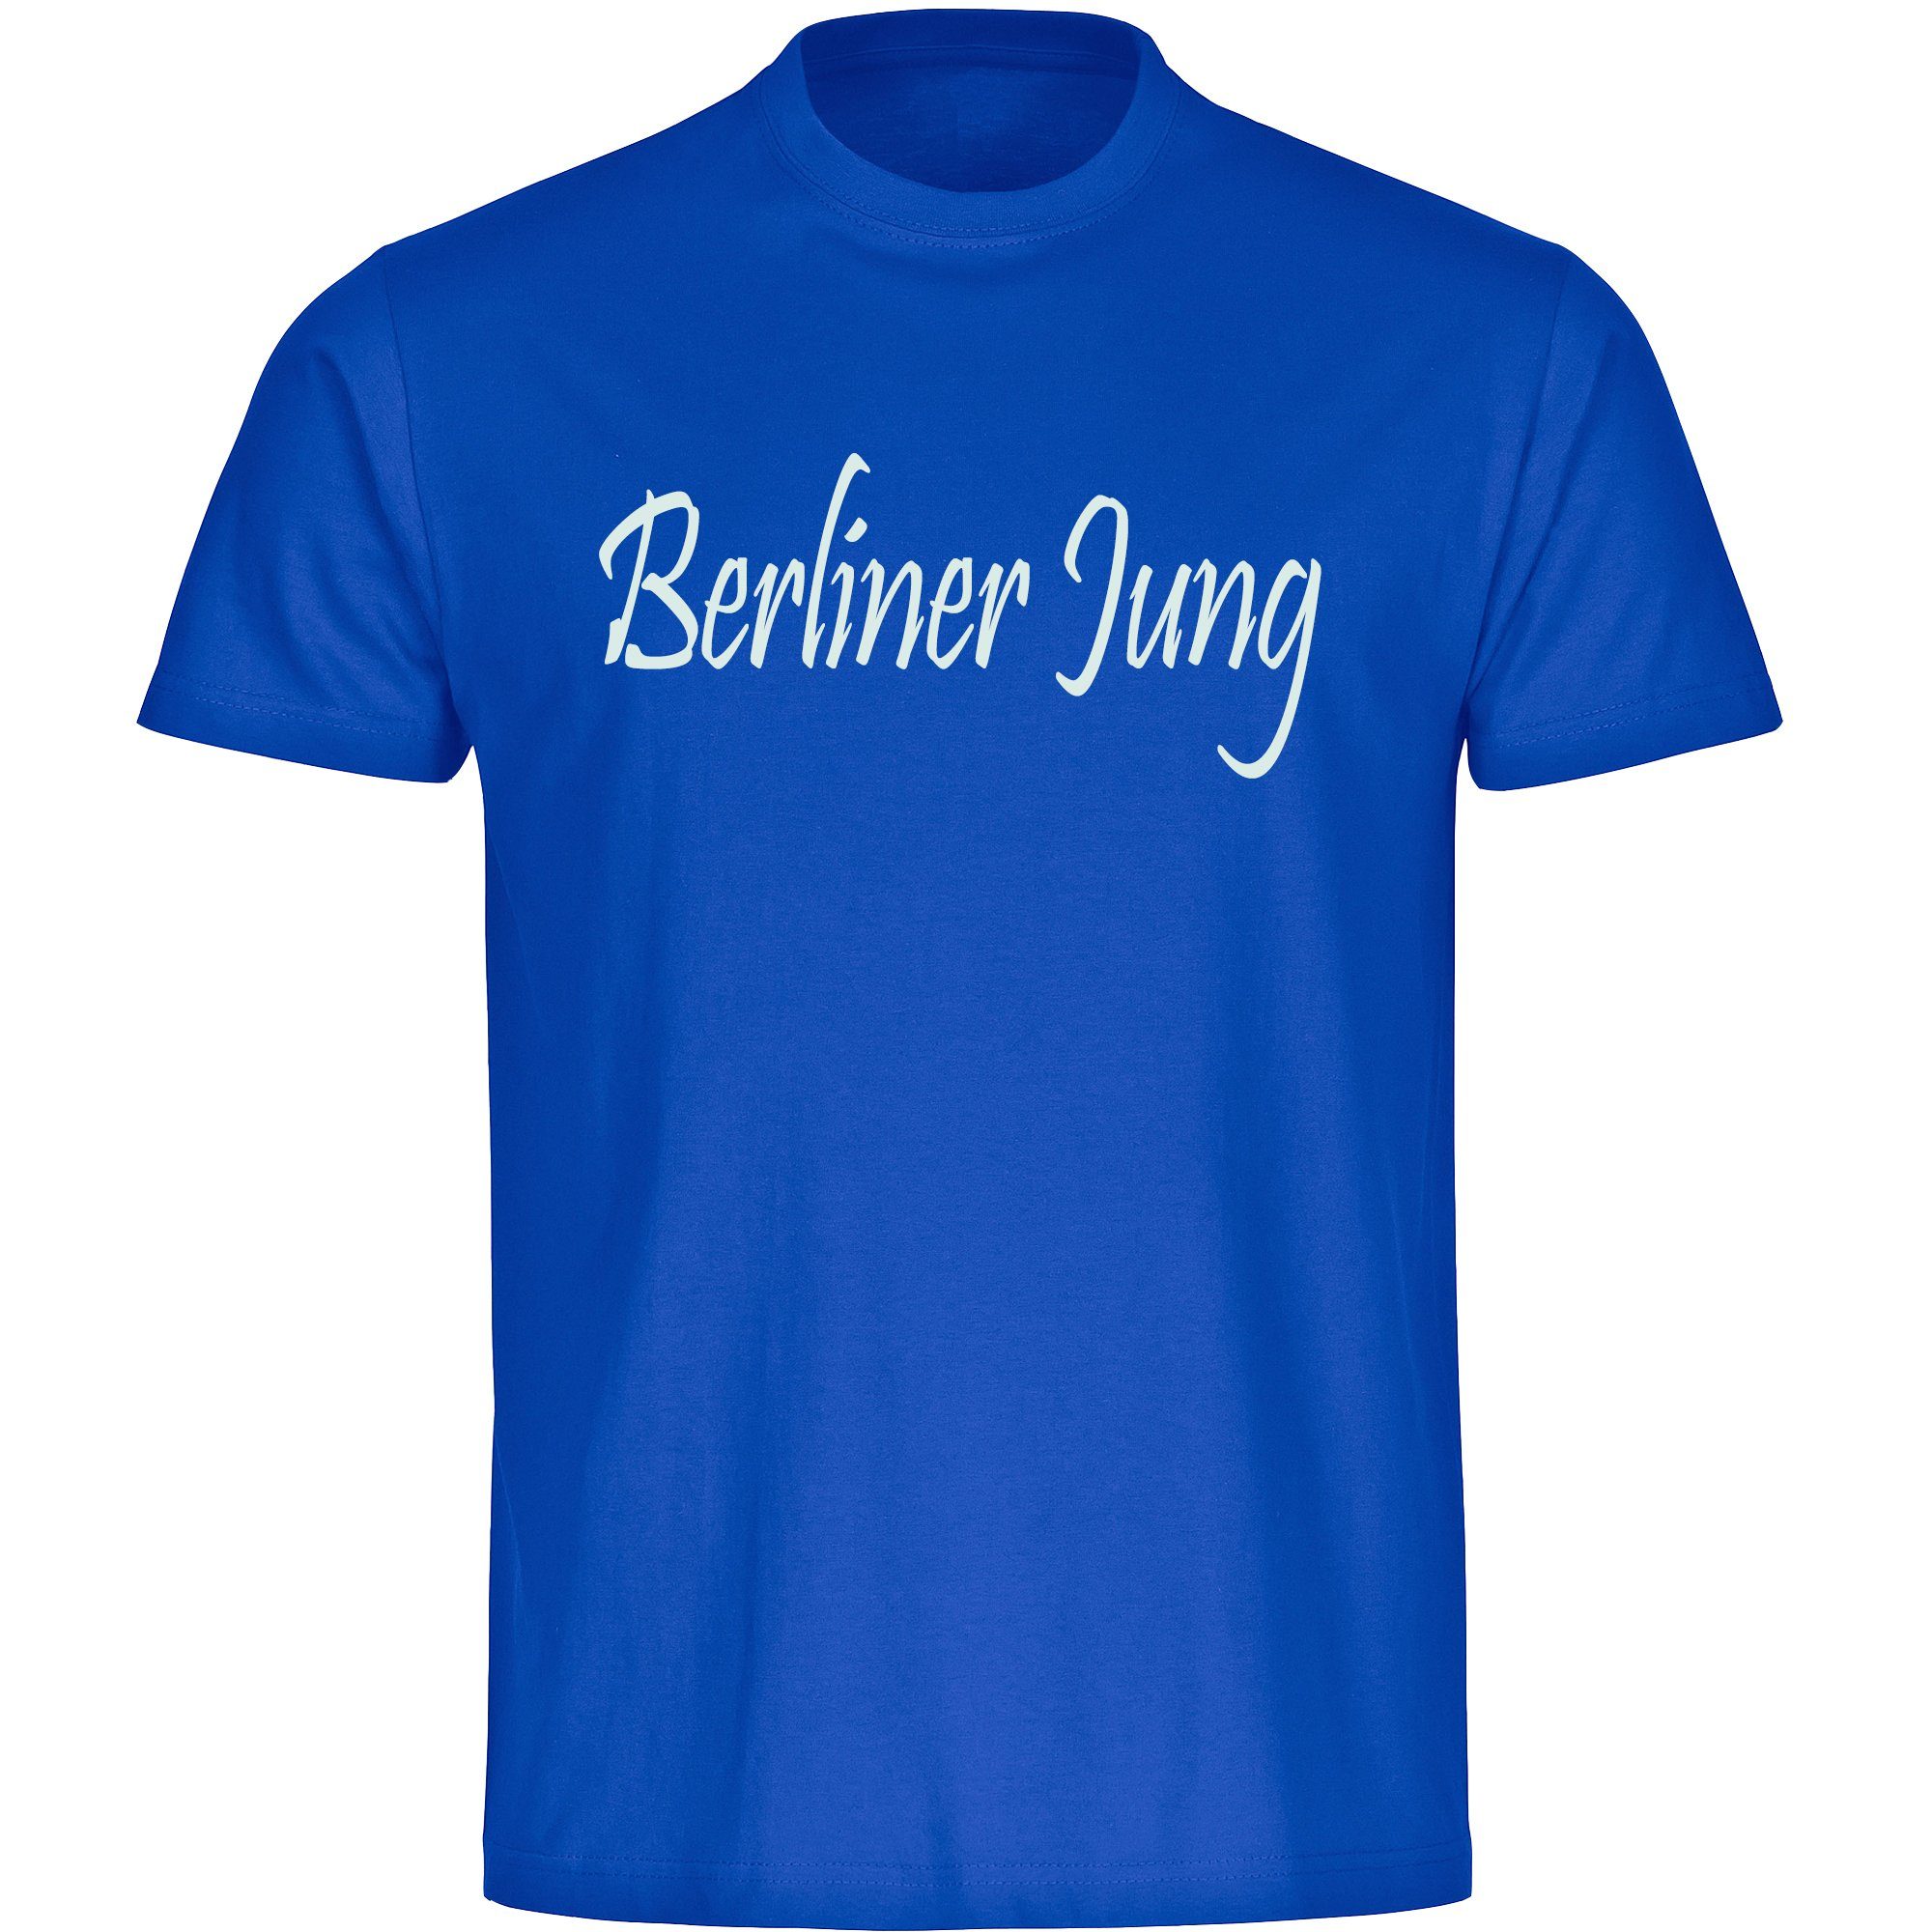 multifanshop T-Shirt Herren Berlin blau - Berliner Jung - Männer